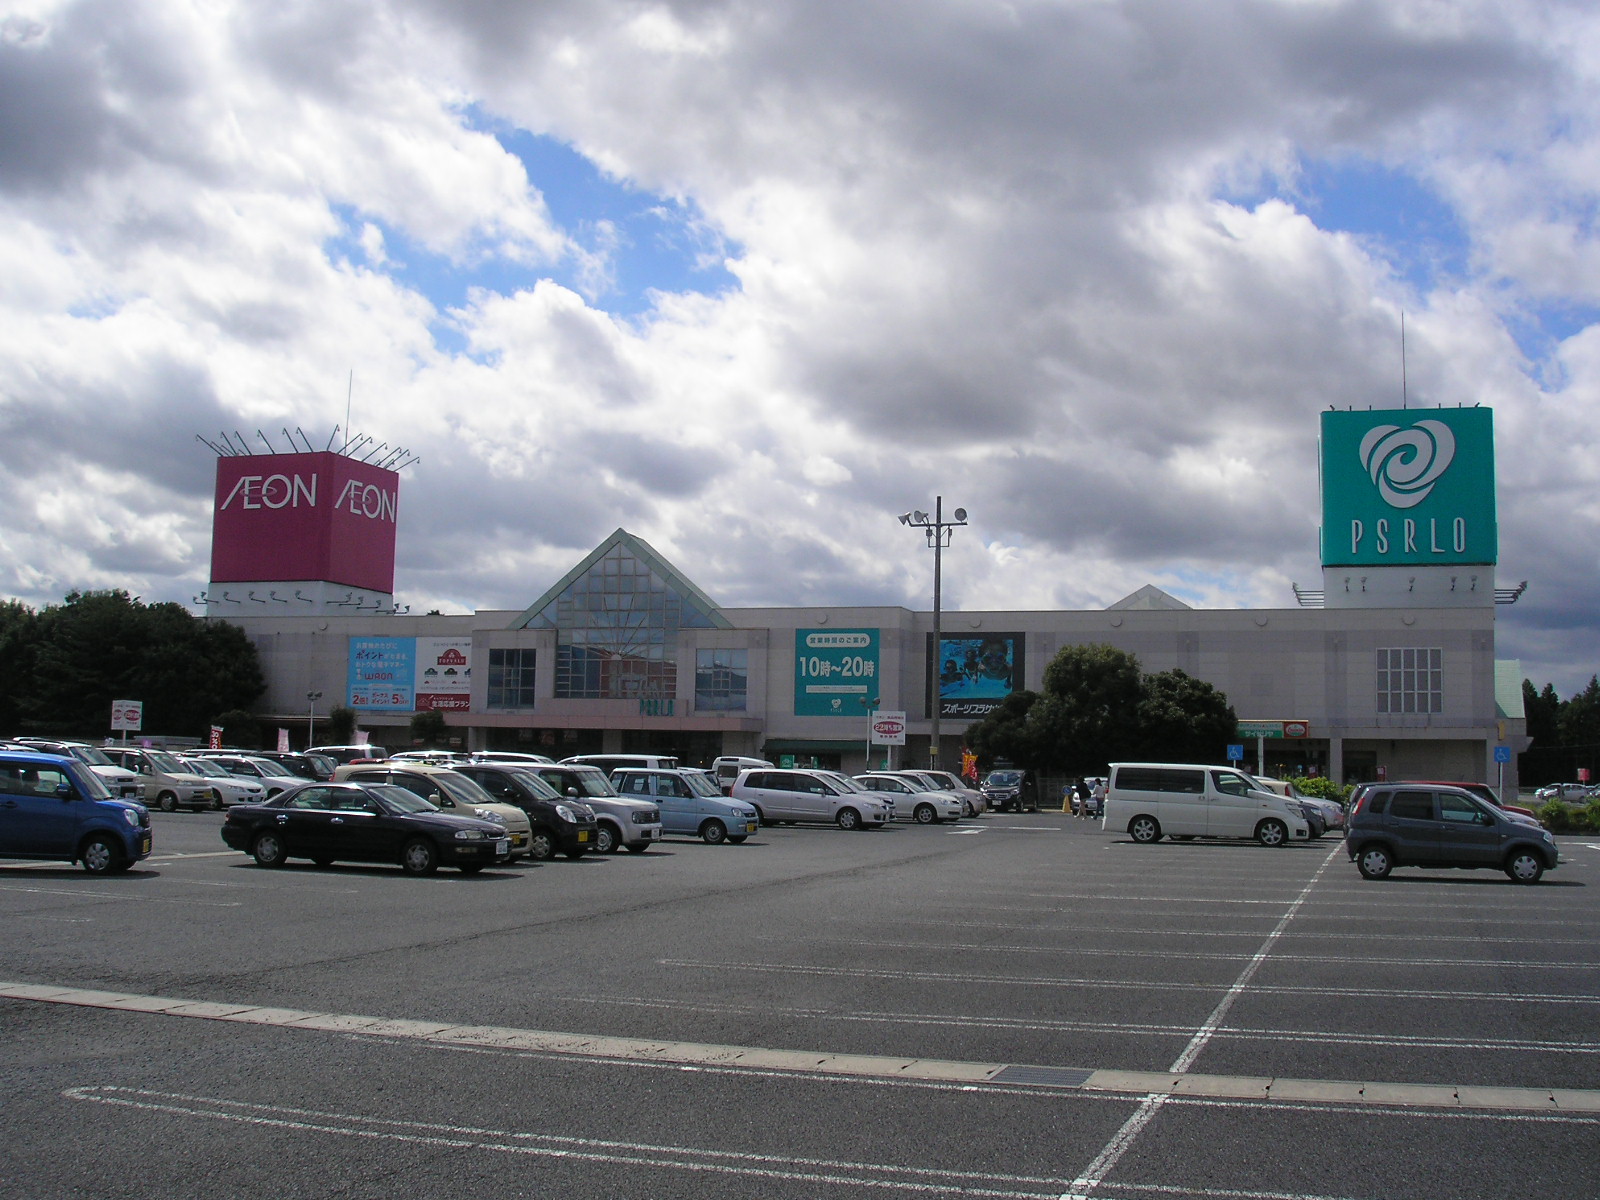 Shopping centre. Hitachi 841m to Omiya shopping center Pizarro (shopping center)